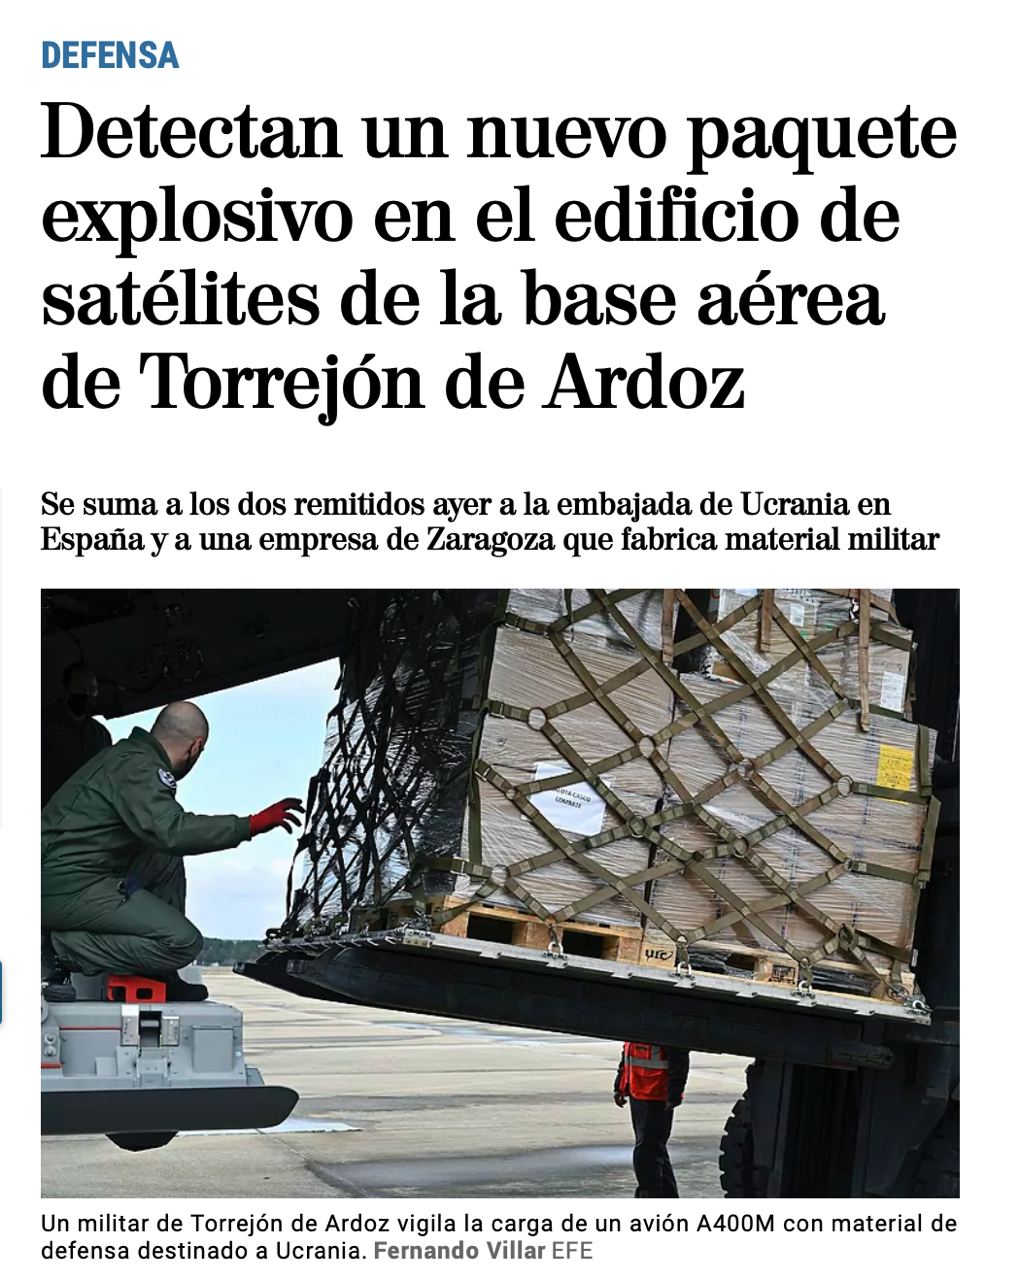 В Испании нашли пакеты со взрывчаткой ещё в двух местах: на авиабазе в Мадриде, которая делится разведданными с Украиной и в компании Instalaza, чье оружие мы получаем, — Mundo